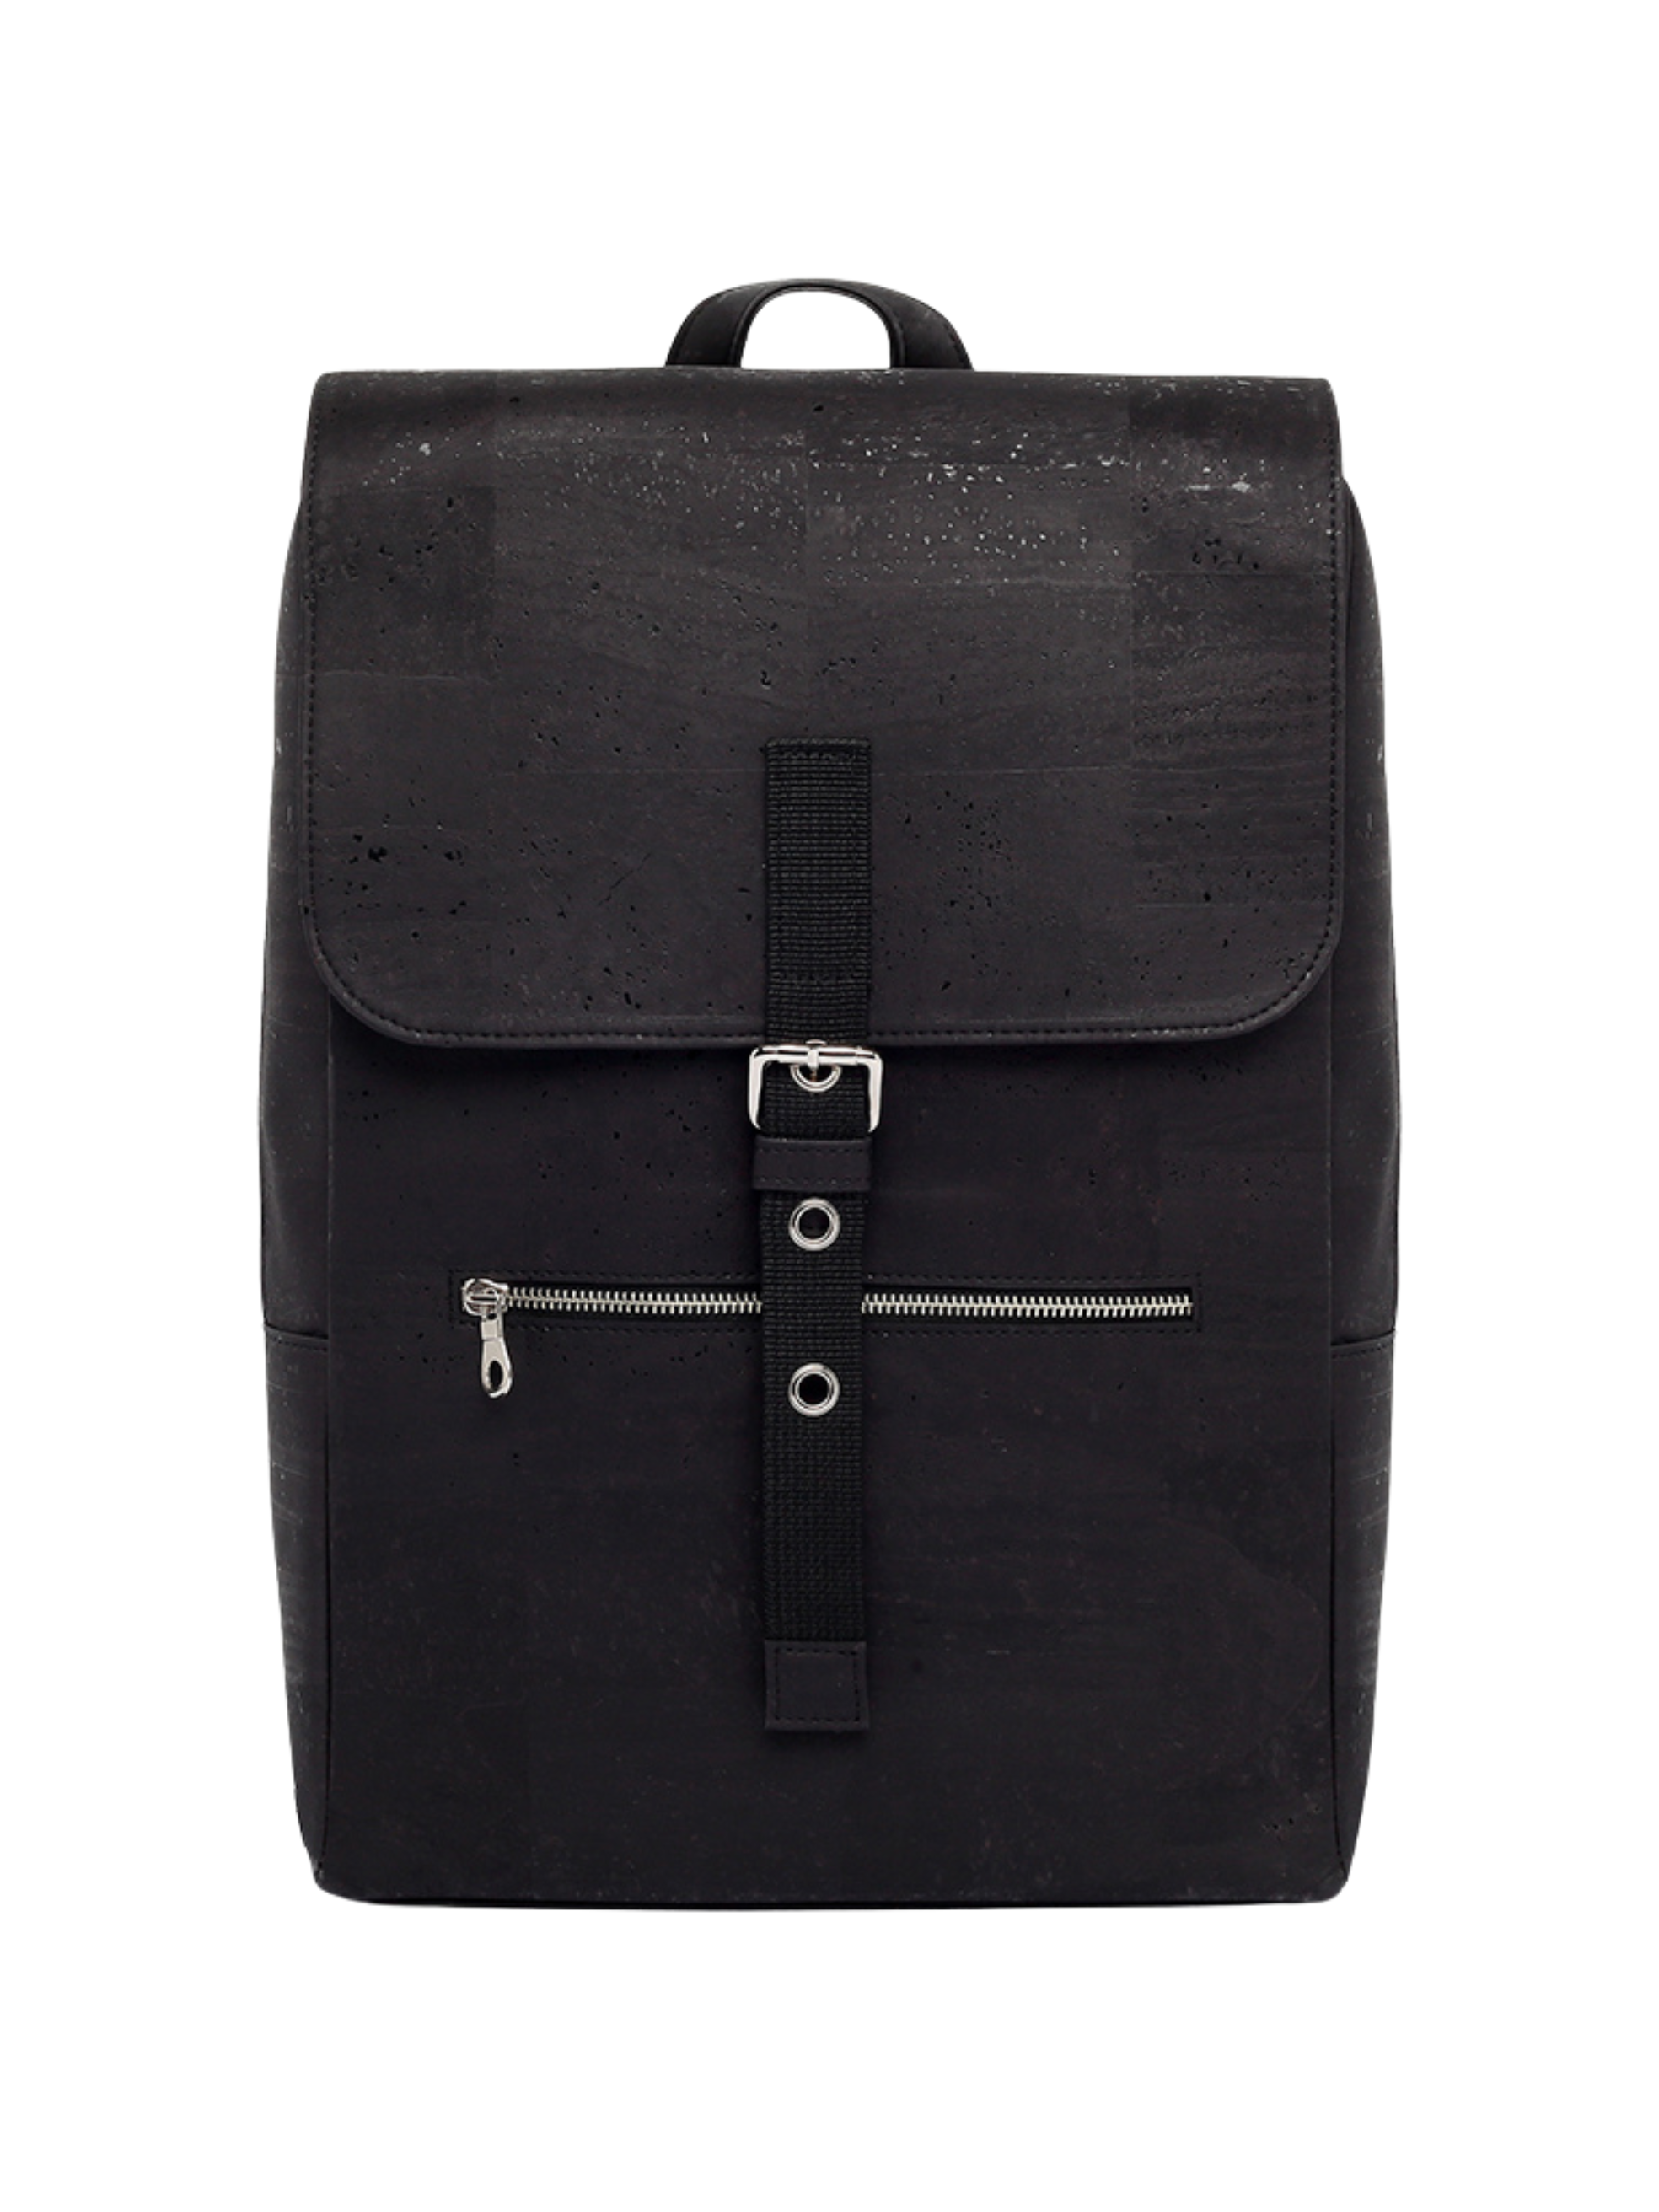 #color_ Black | Artelusa Cork Travel Backpack - Black - 4009.04-B36-1